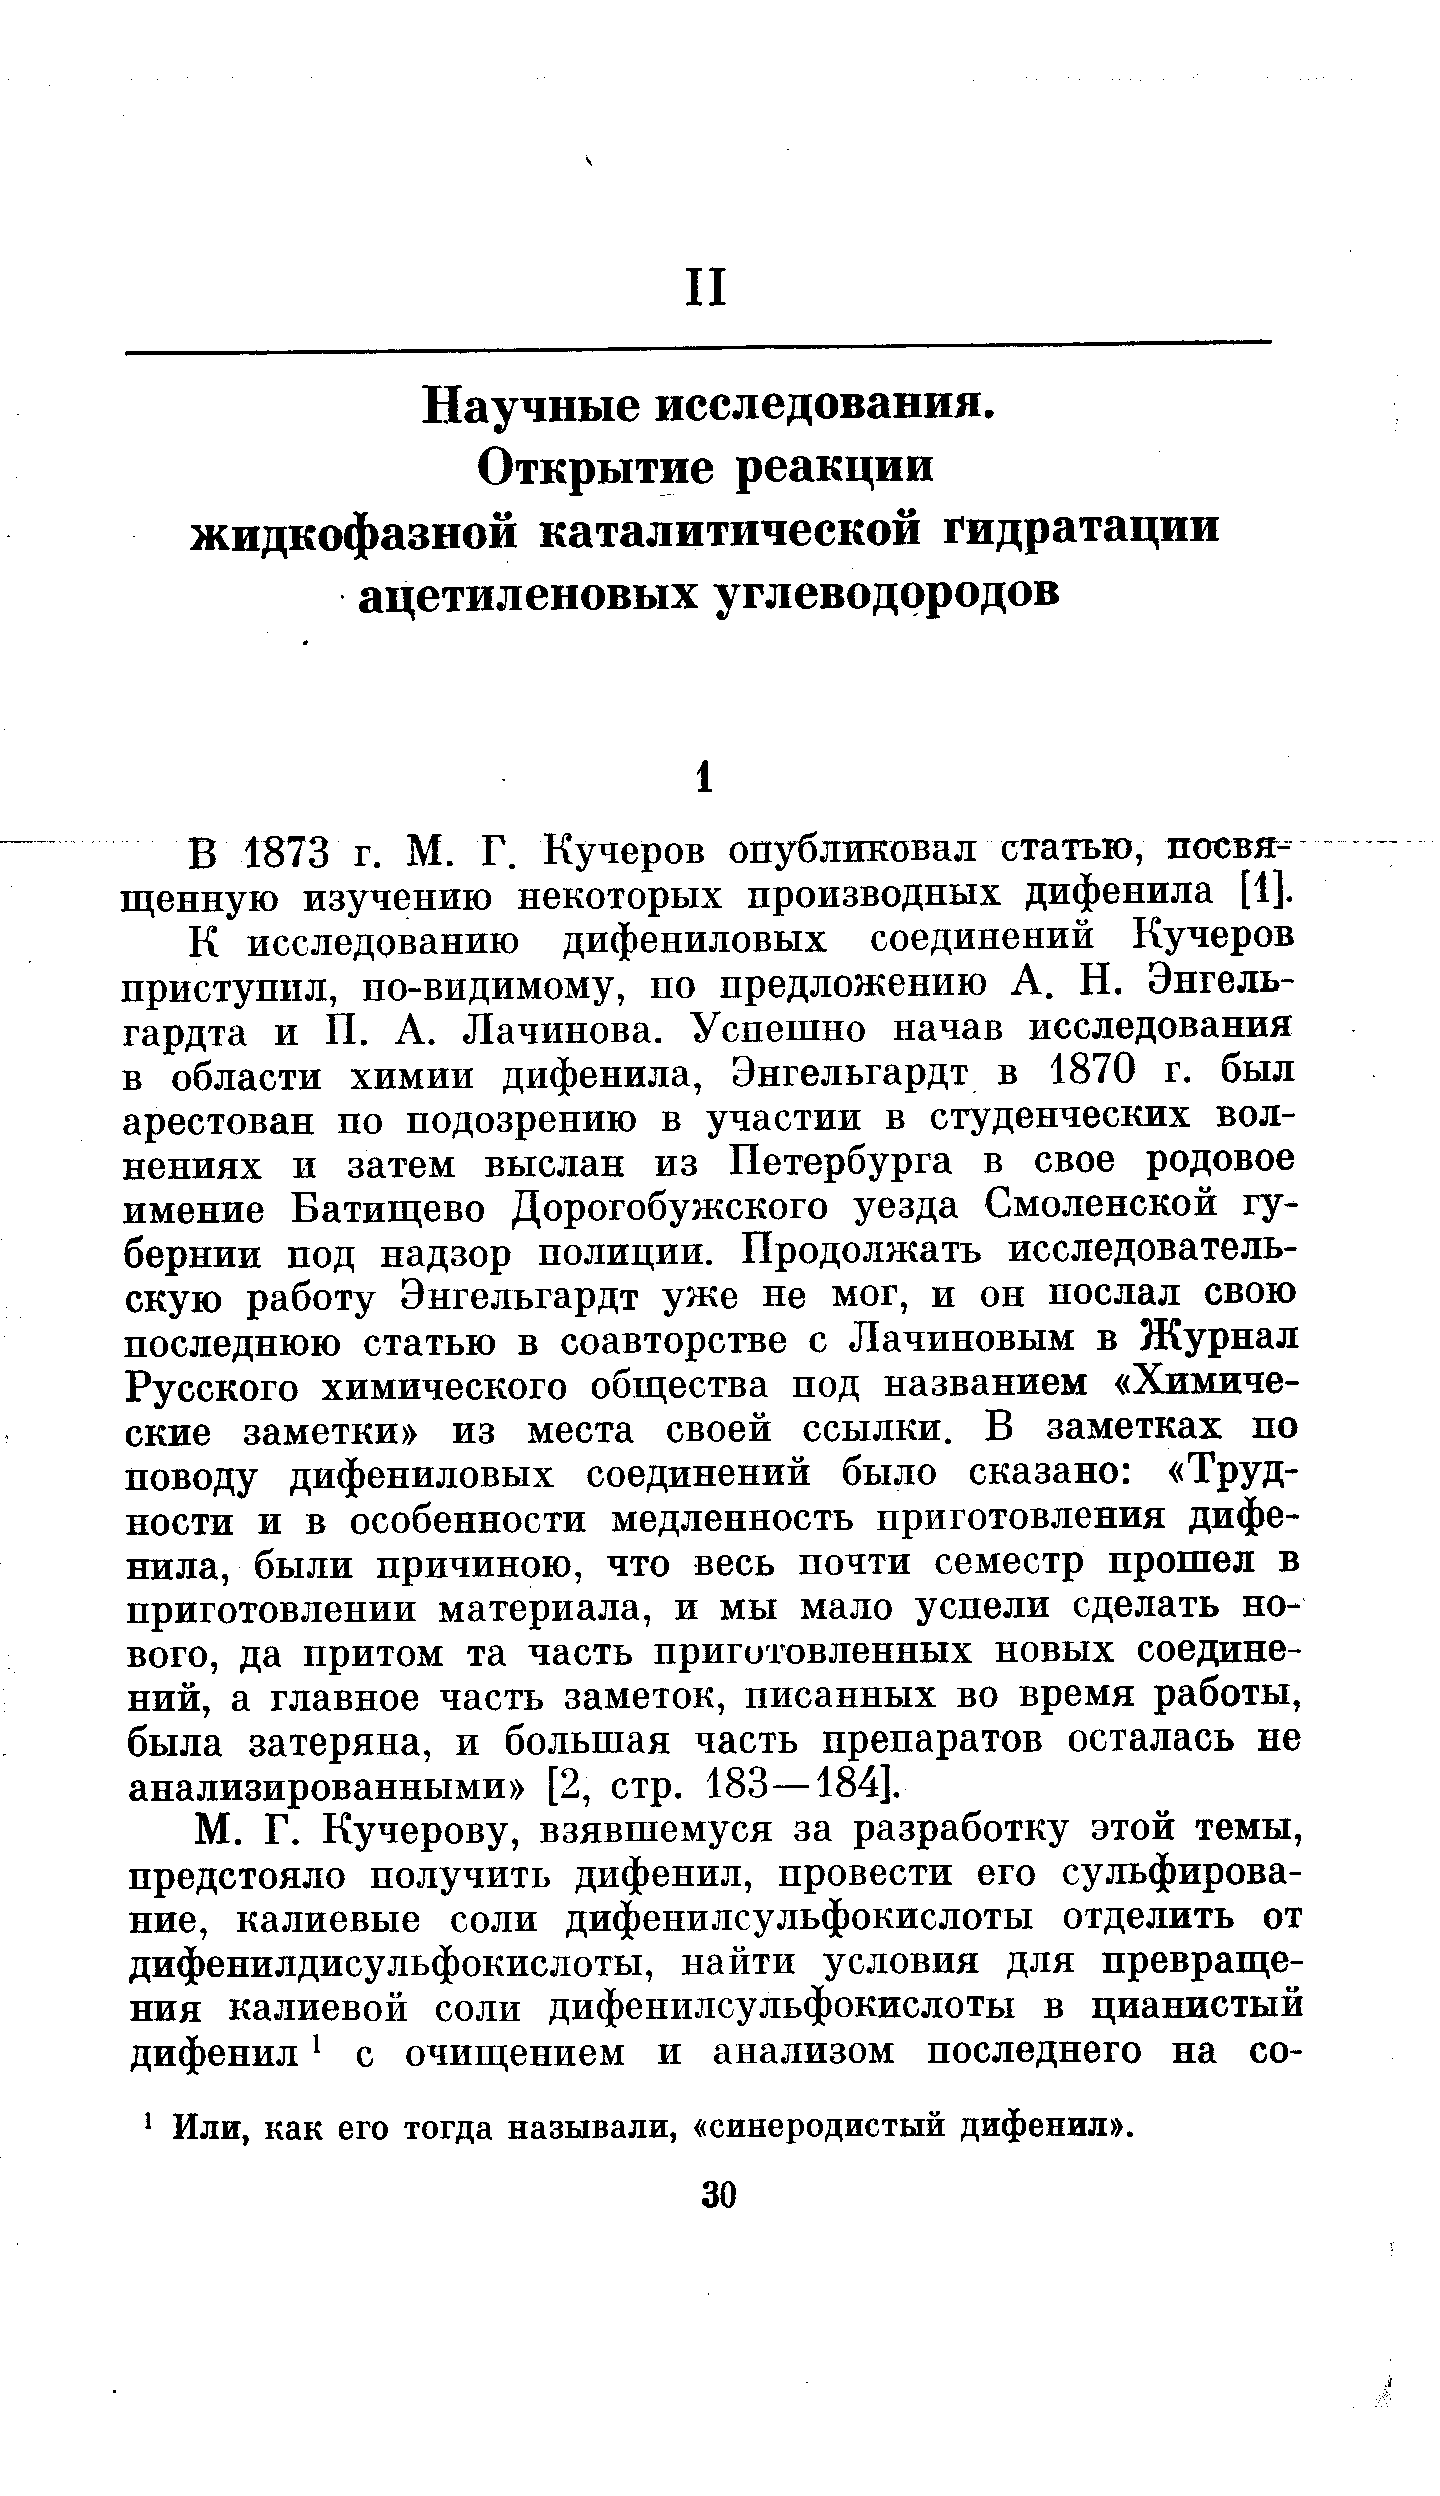 В 1873 г. М. Г. Кучеров опубликовал статью, посвященную изучению некоторых производных дифенила [1].